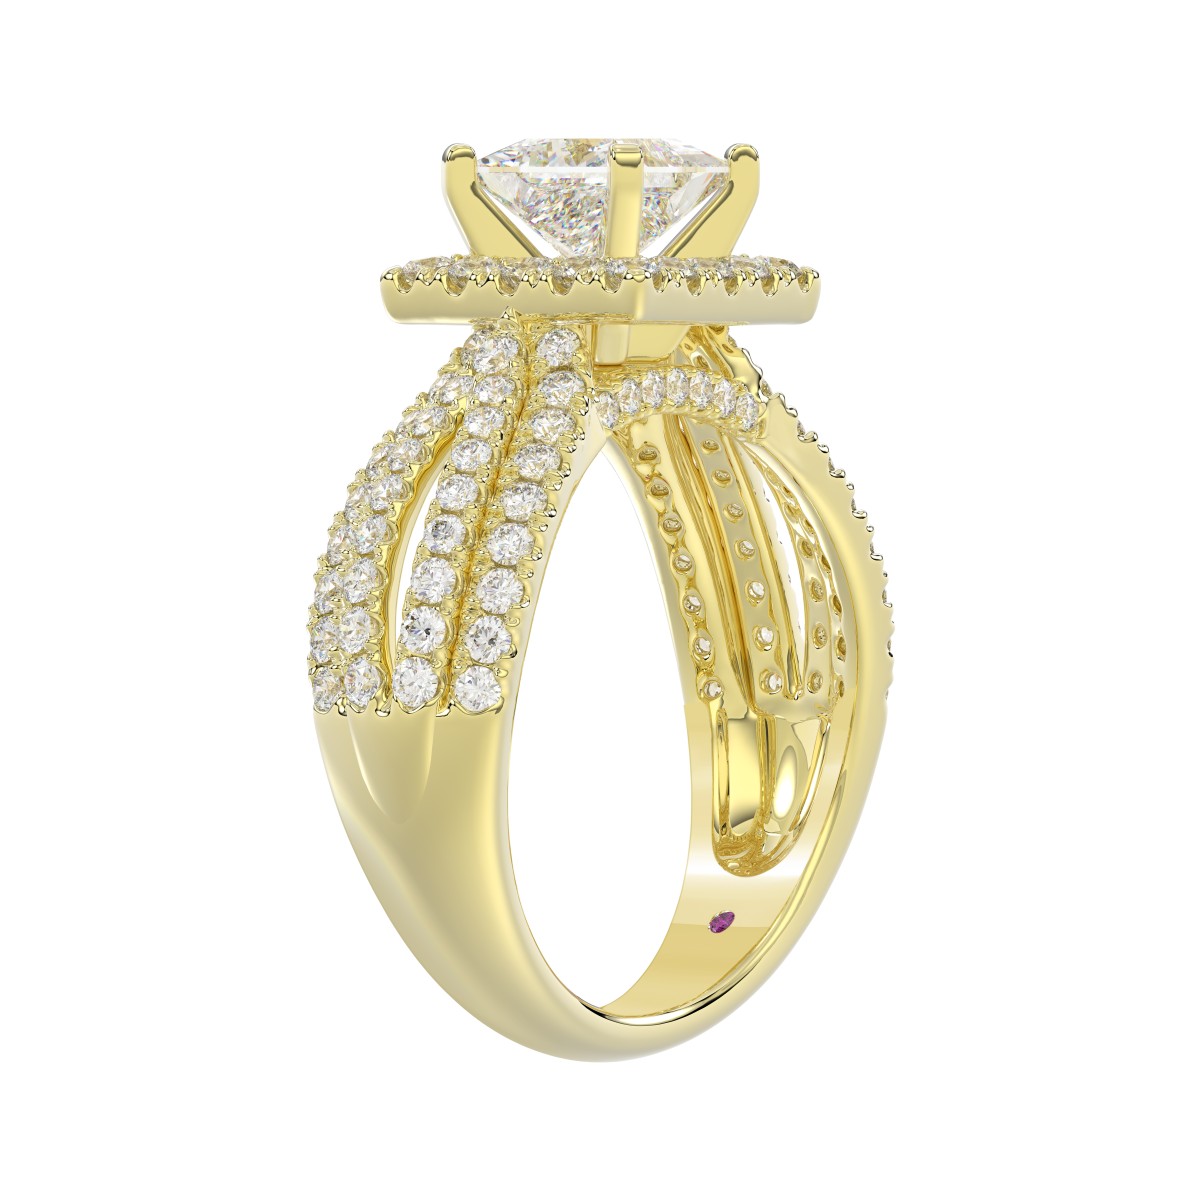 14K YELLOW GOLD 1CT ROUND/PRINCESS DIAMOND LADIES RING(CENTER STONE MOUNT PRINCESS DIAMOND 1CT)